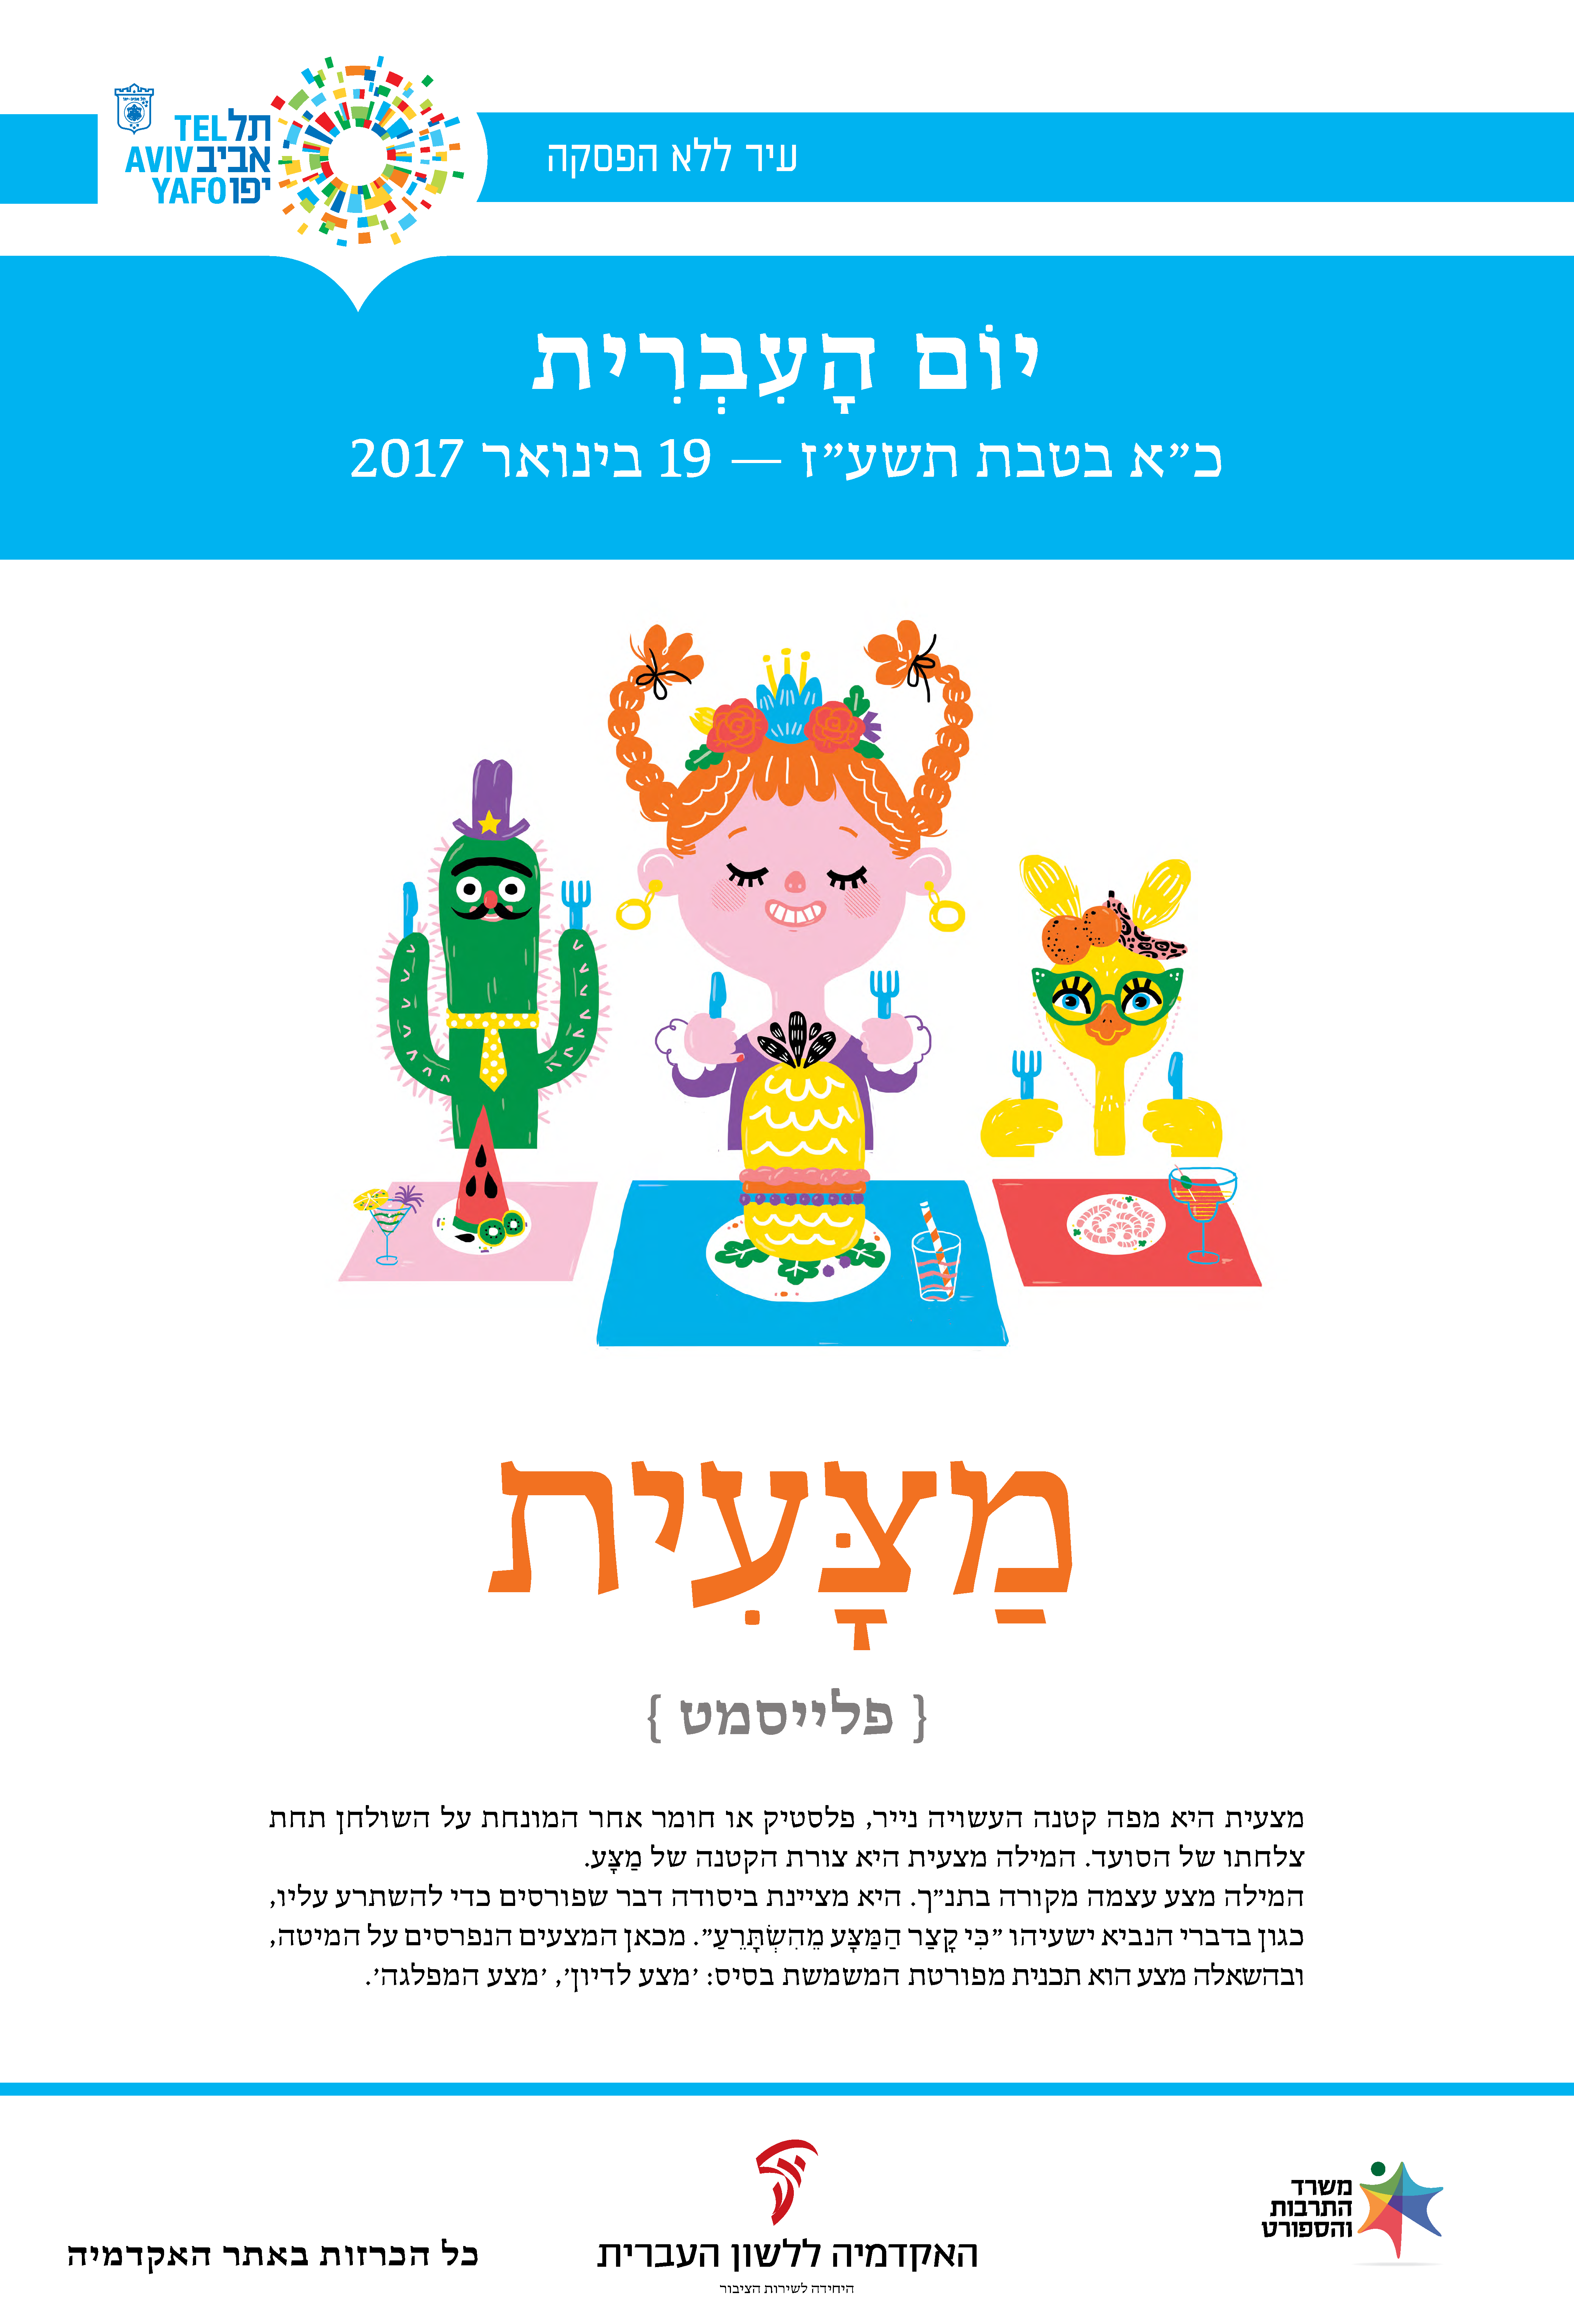 ילדים ליד מצעיות אוכל - מצעית - כרזה ליום העברית תשעז